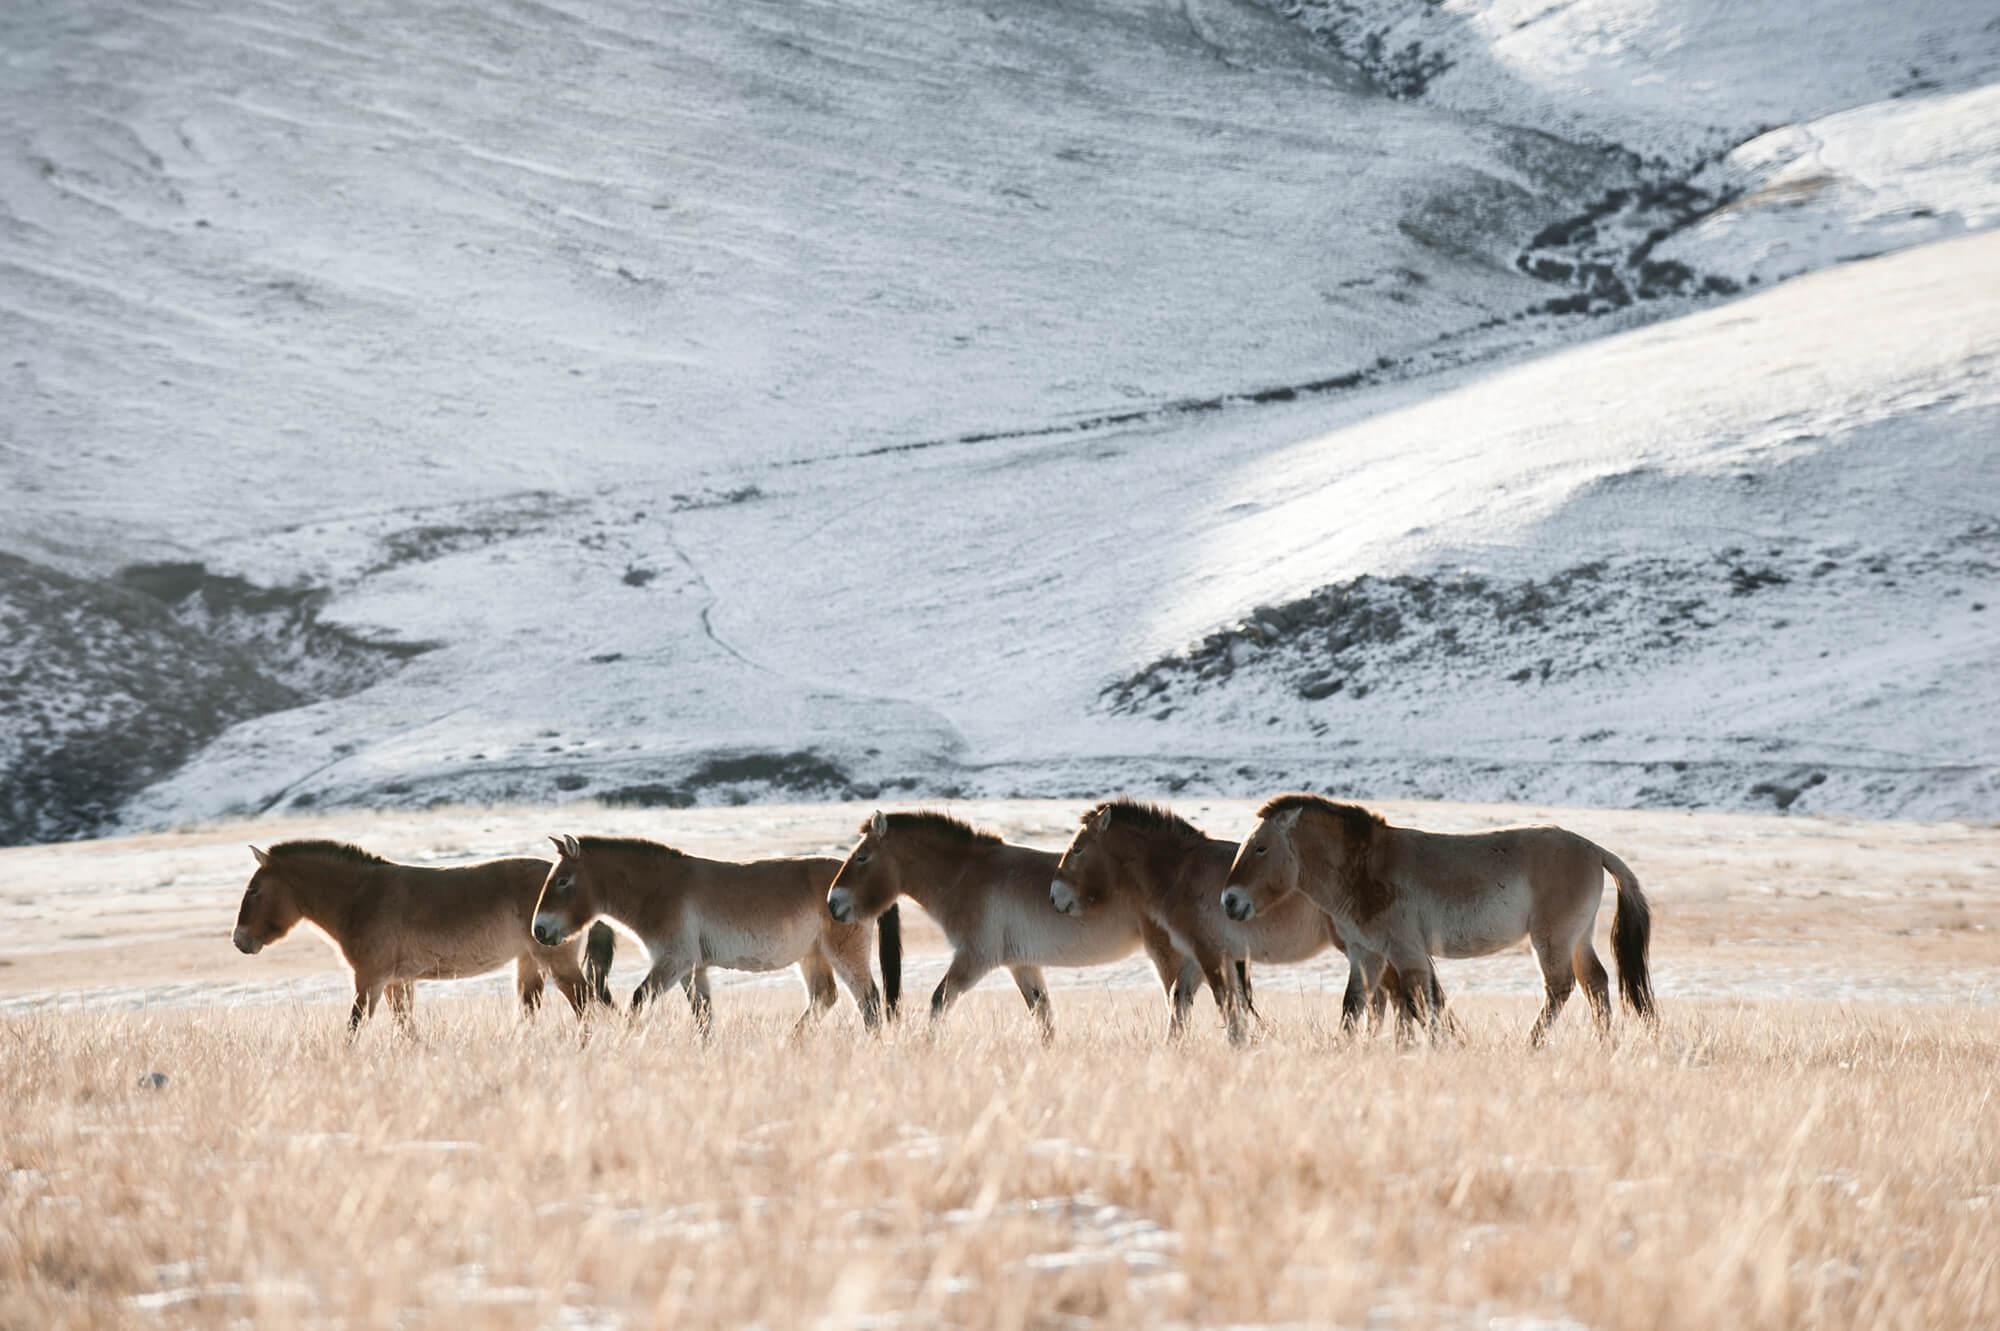 قطيع صغير من خيول برجفالسكي وخلفها جبال مغطاة بالثلوج. المصور: أستريد هاريسون     المكان: منغوليا